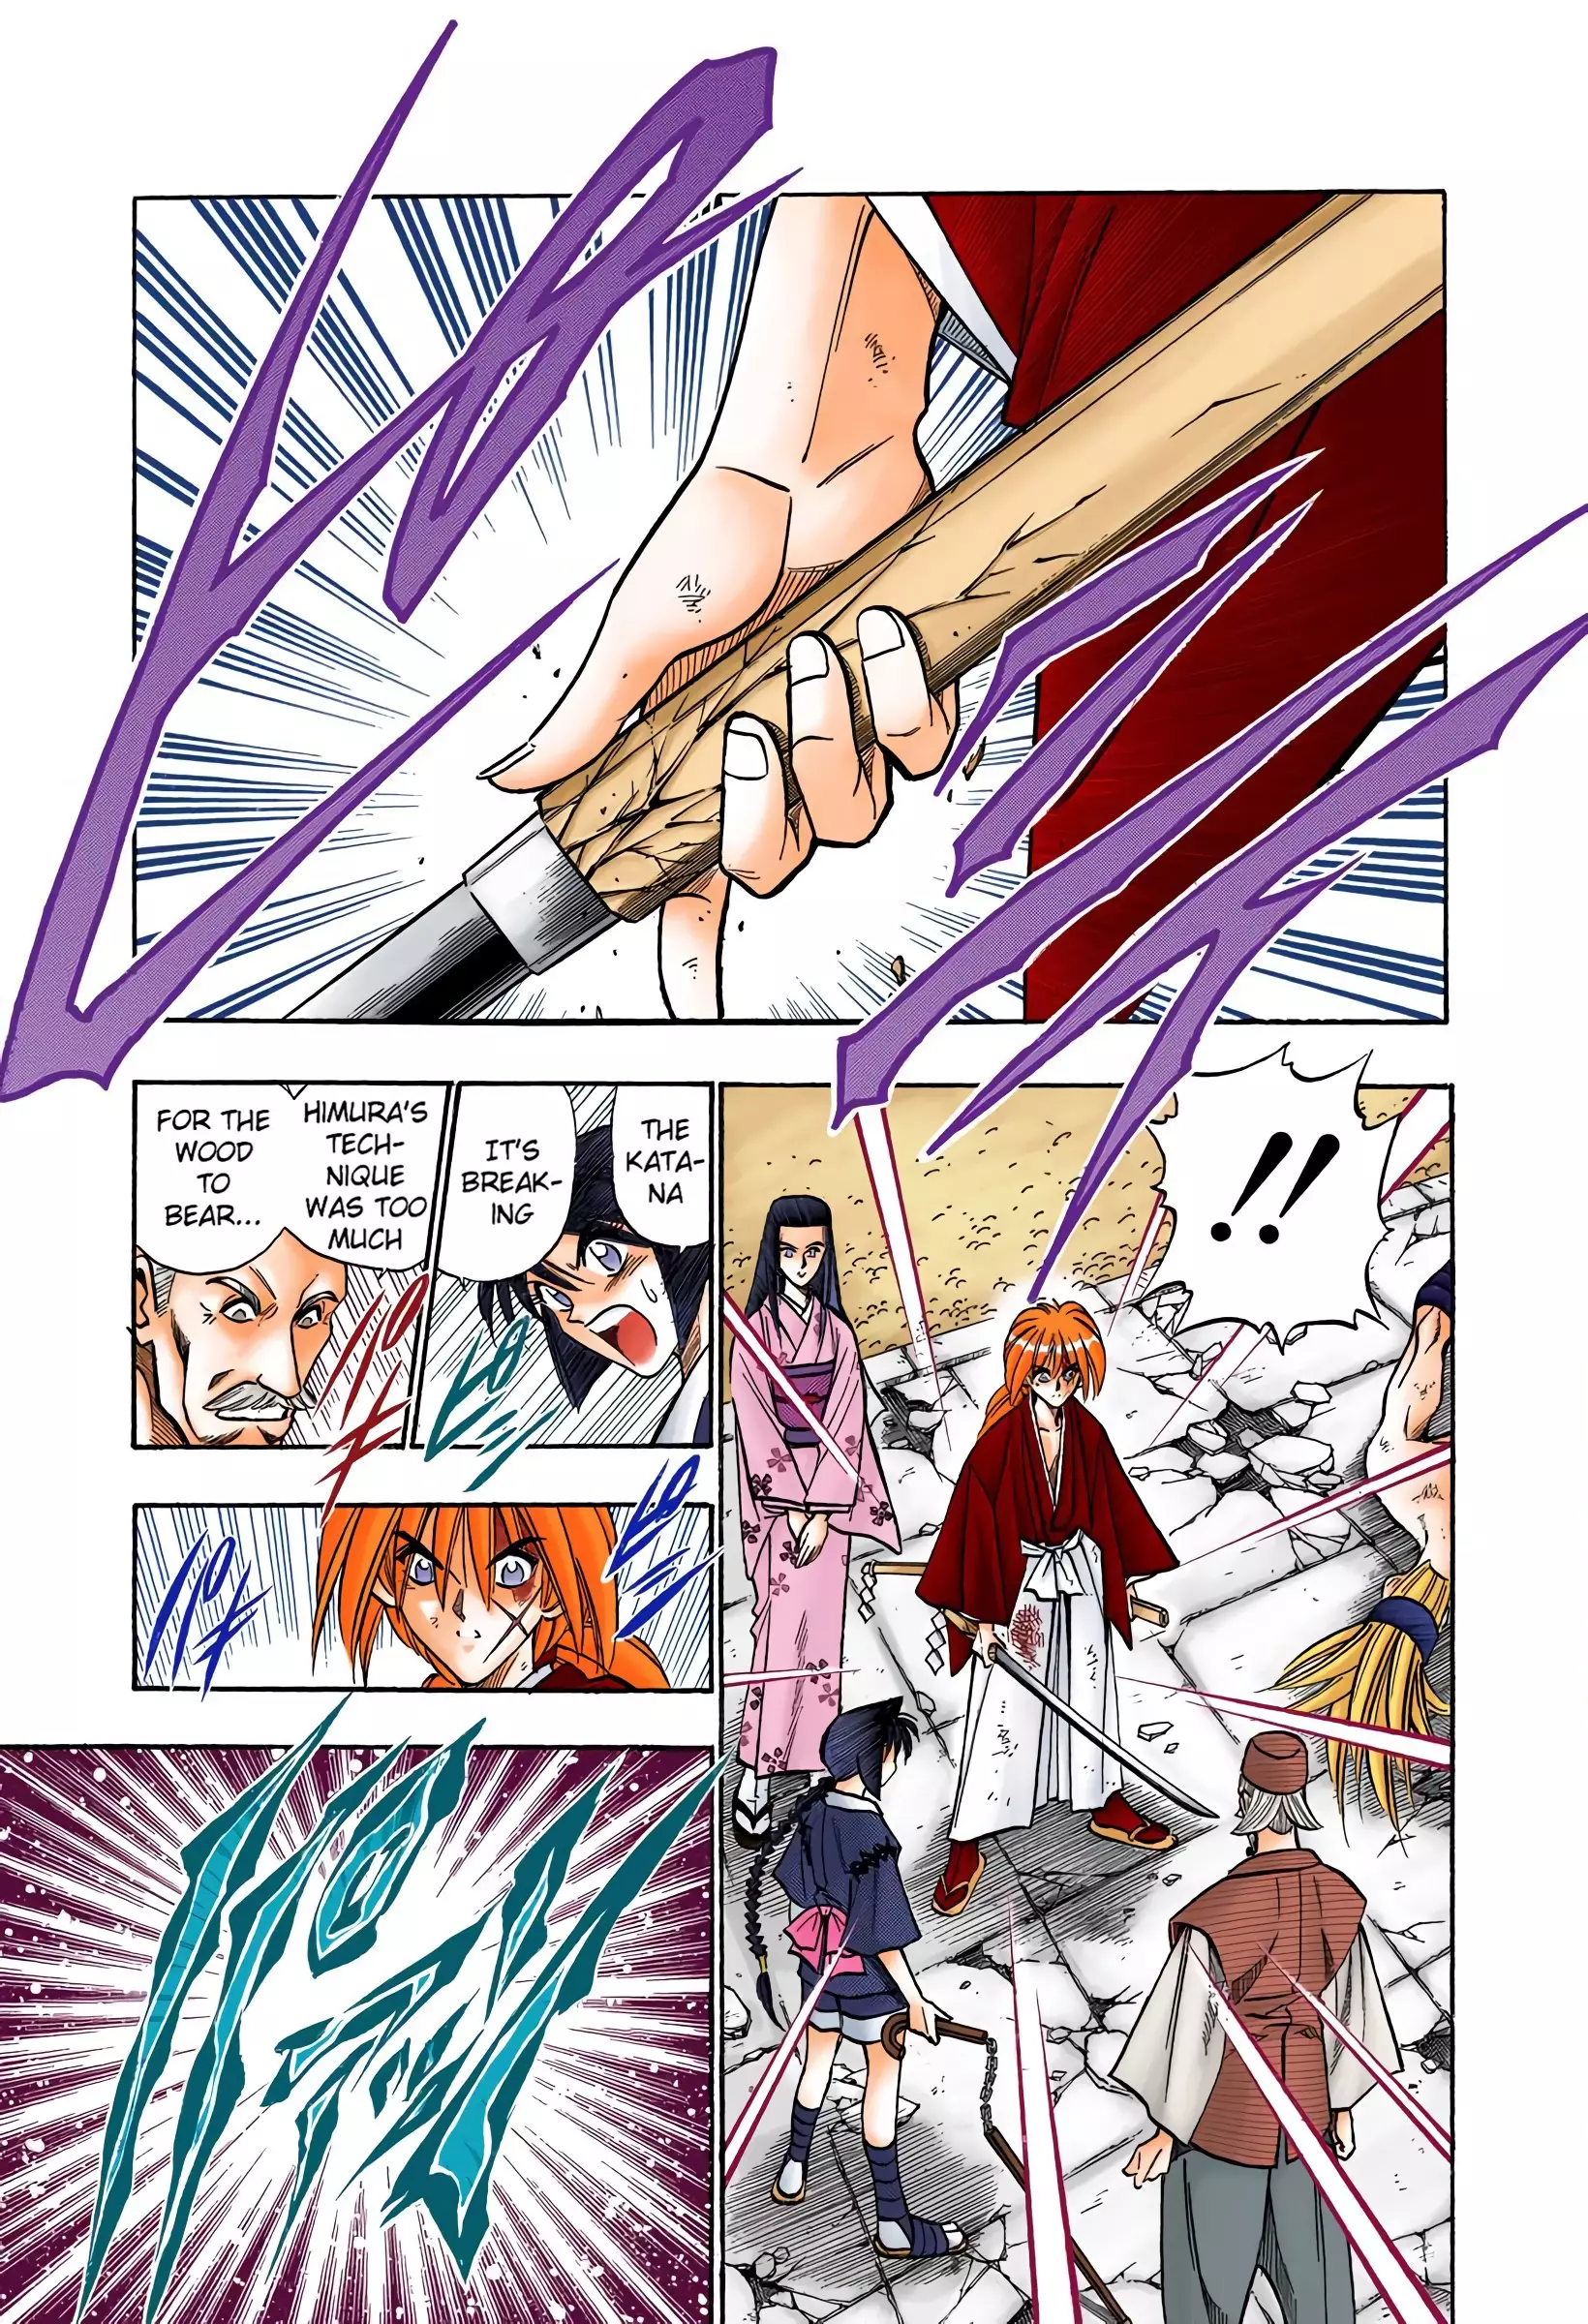 Rurouni Kenshin: Meiji Kenkaku Romantan - Digital Colored Comics - 81 page 11-7794dcf2